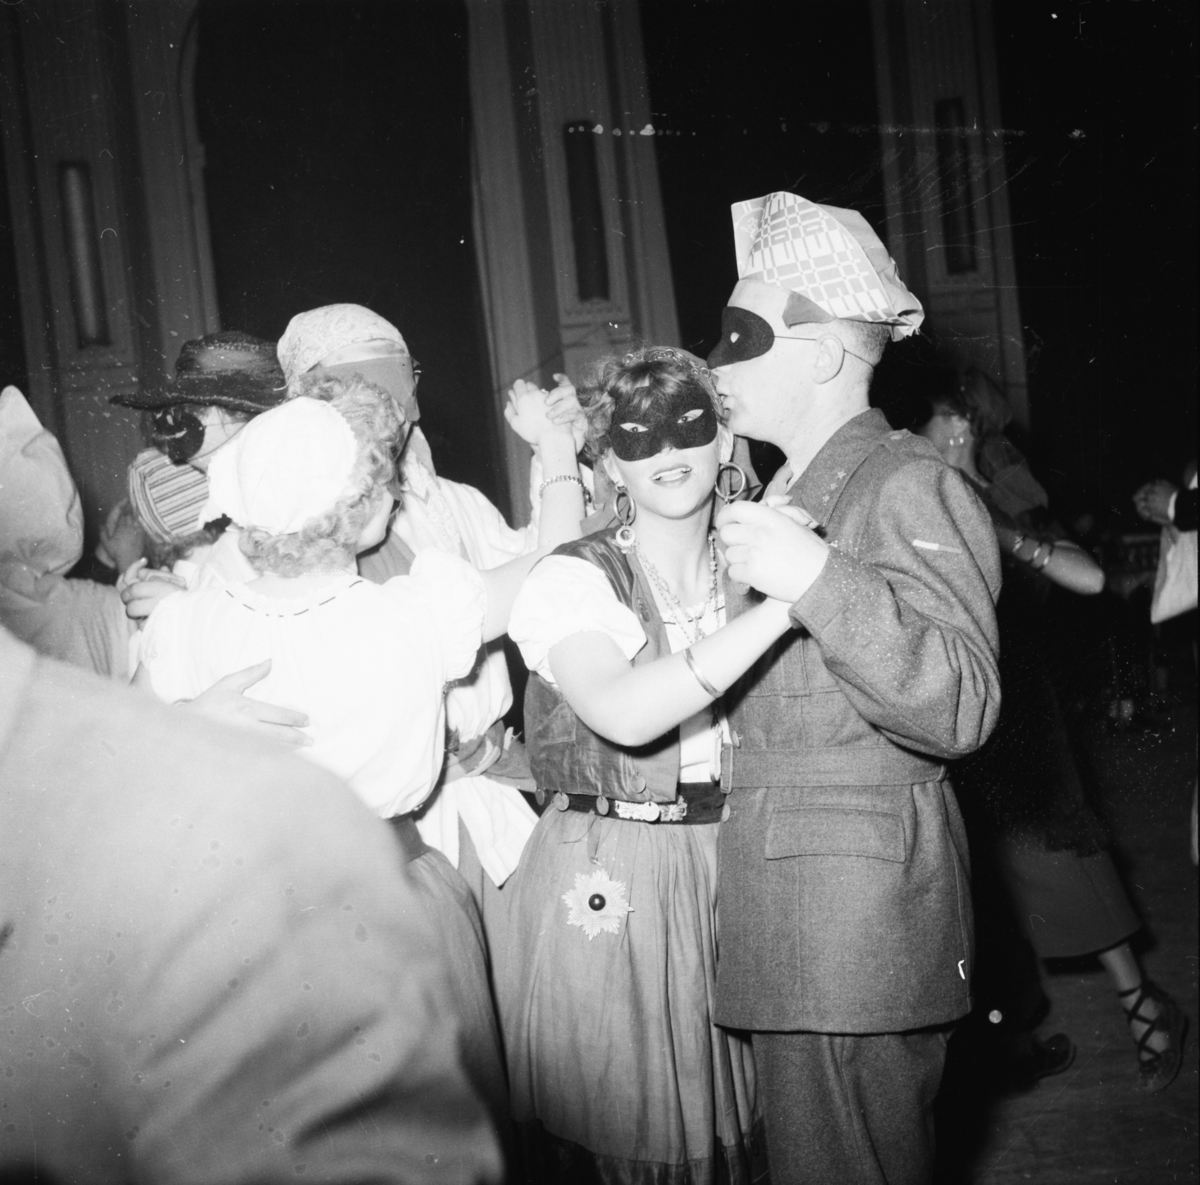 Vardens arkiv. "Byfor. arrangerer karneval i Festiviteten"  20.02.1954